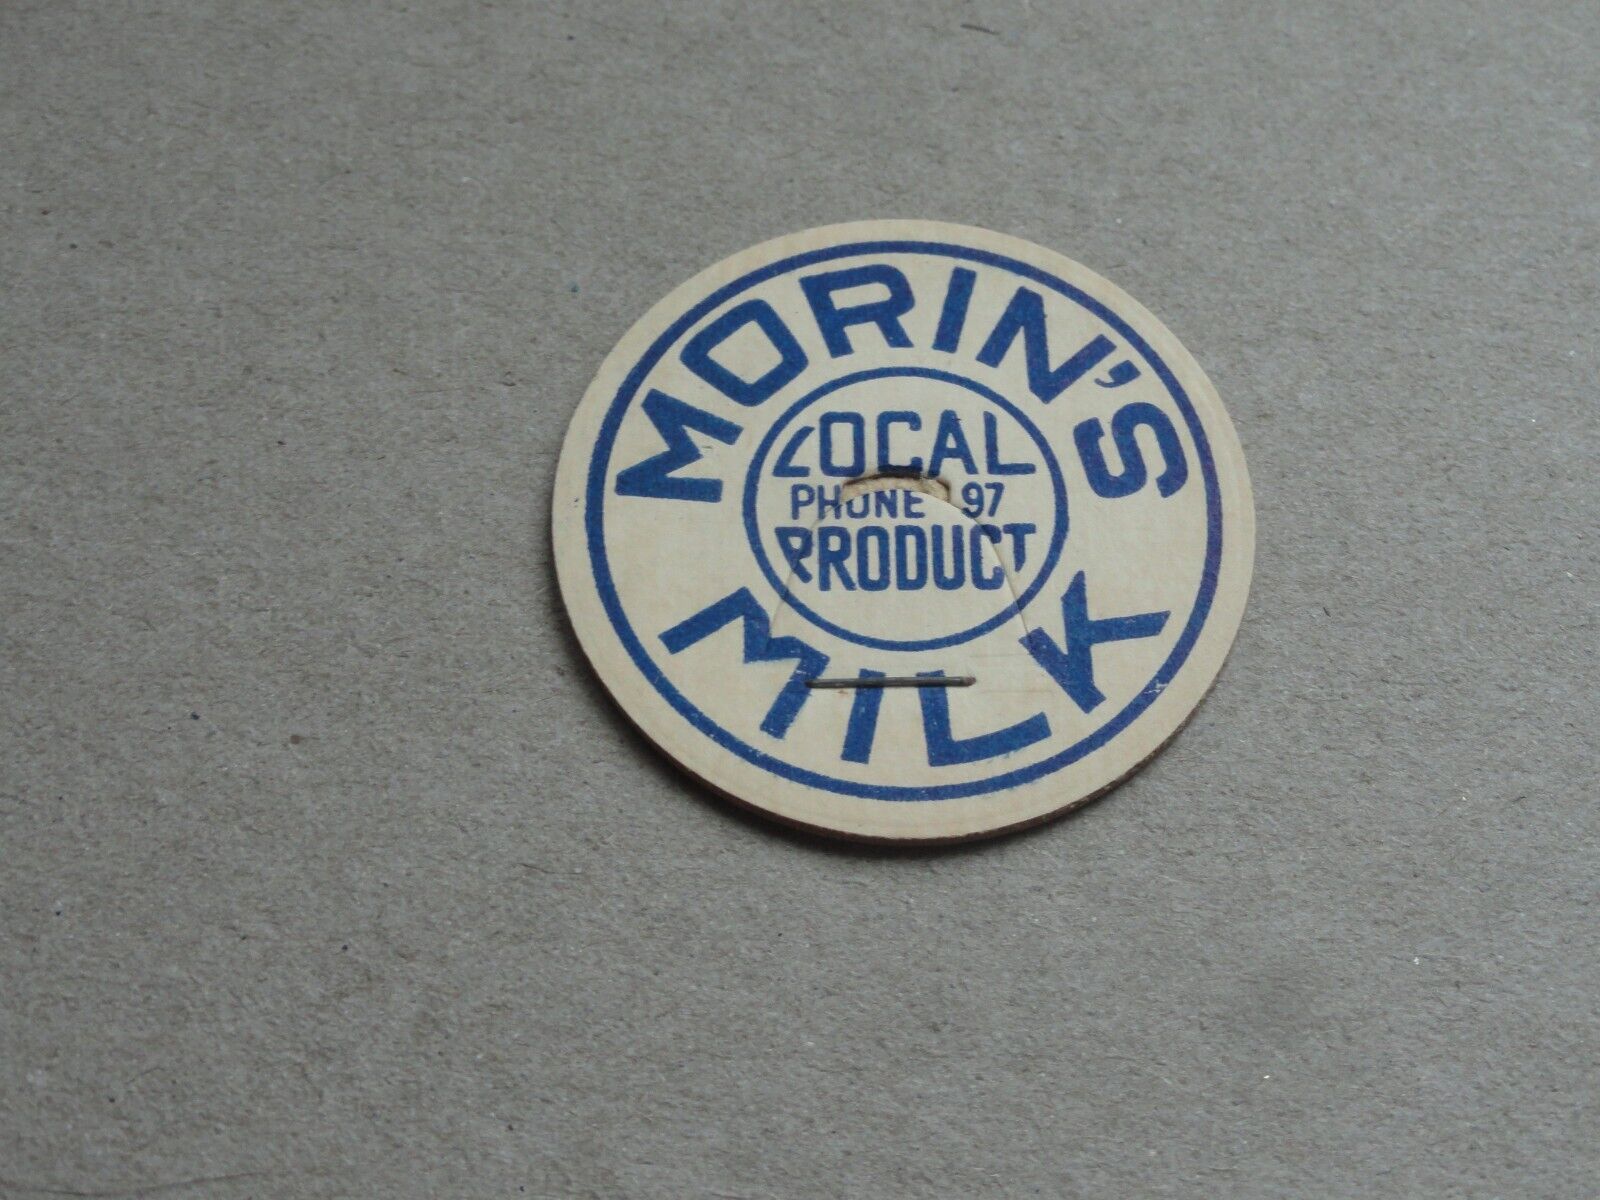 Vintage Morin\'s (2)  Milk bottle caps unused  Berlin N.H. rare find